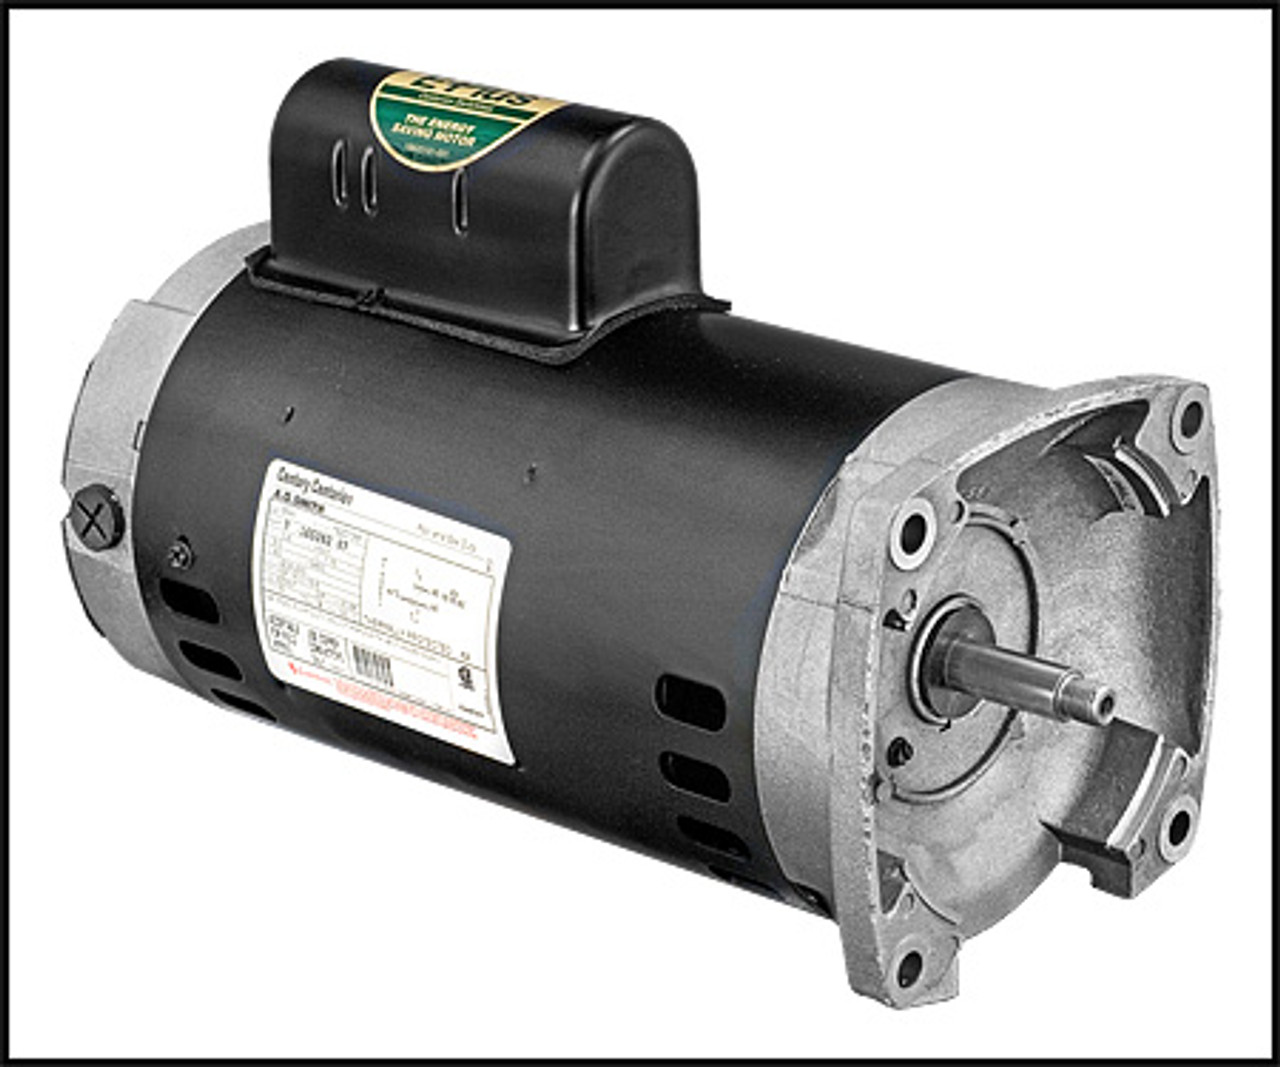 Regal Beloit/A.O. Smith 3 HP 1 Phase 208/230V Flanged Magnetek Pump Motor (#B2844)